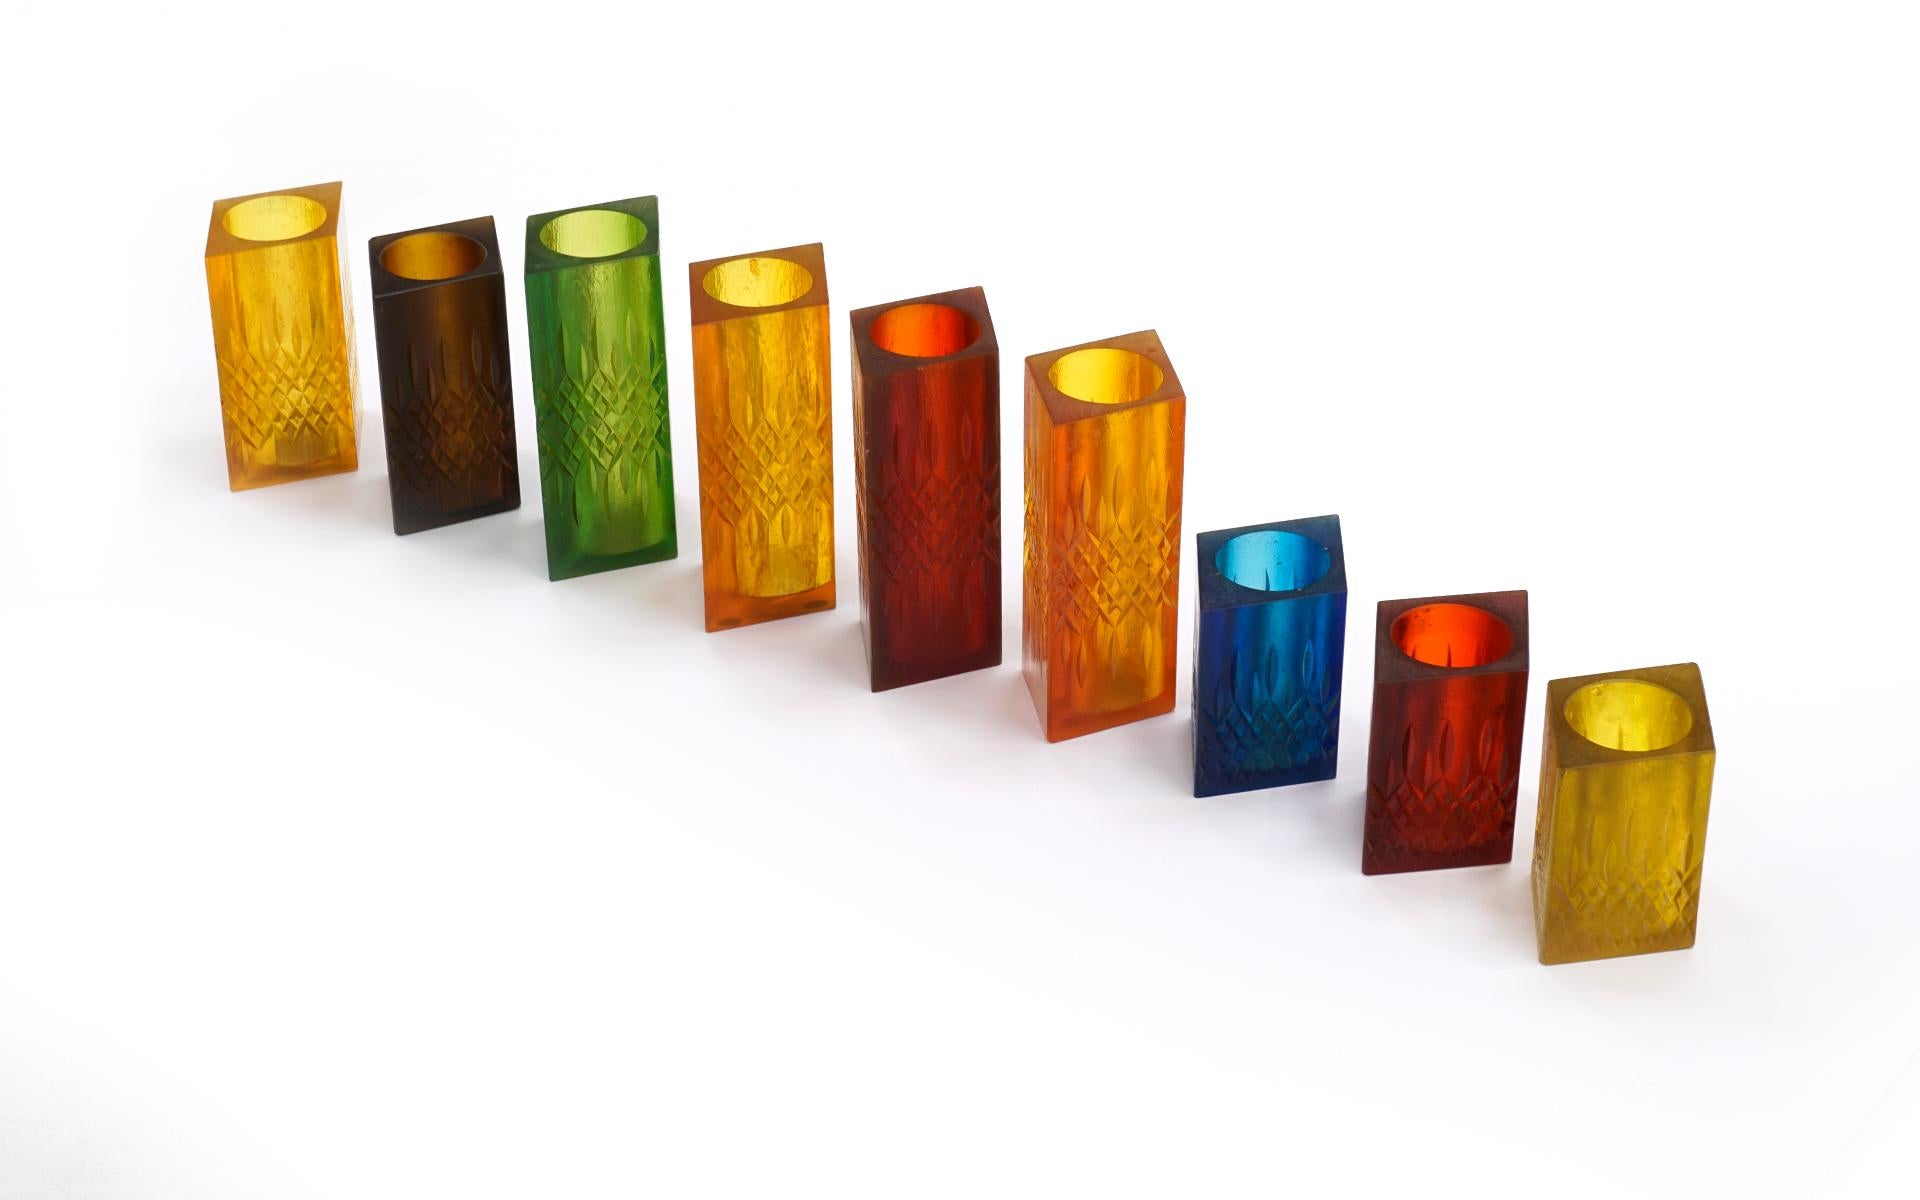 American Set of Nine Candleholder / Vases by Sascha Brastoff, Multi-Color Resin, Signed